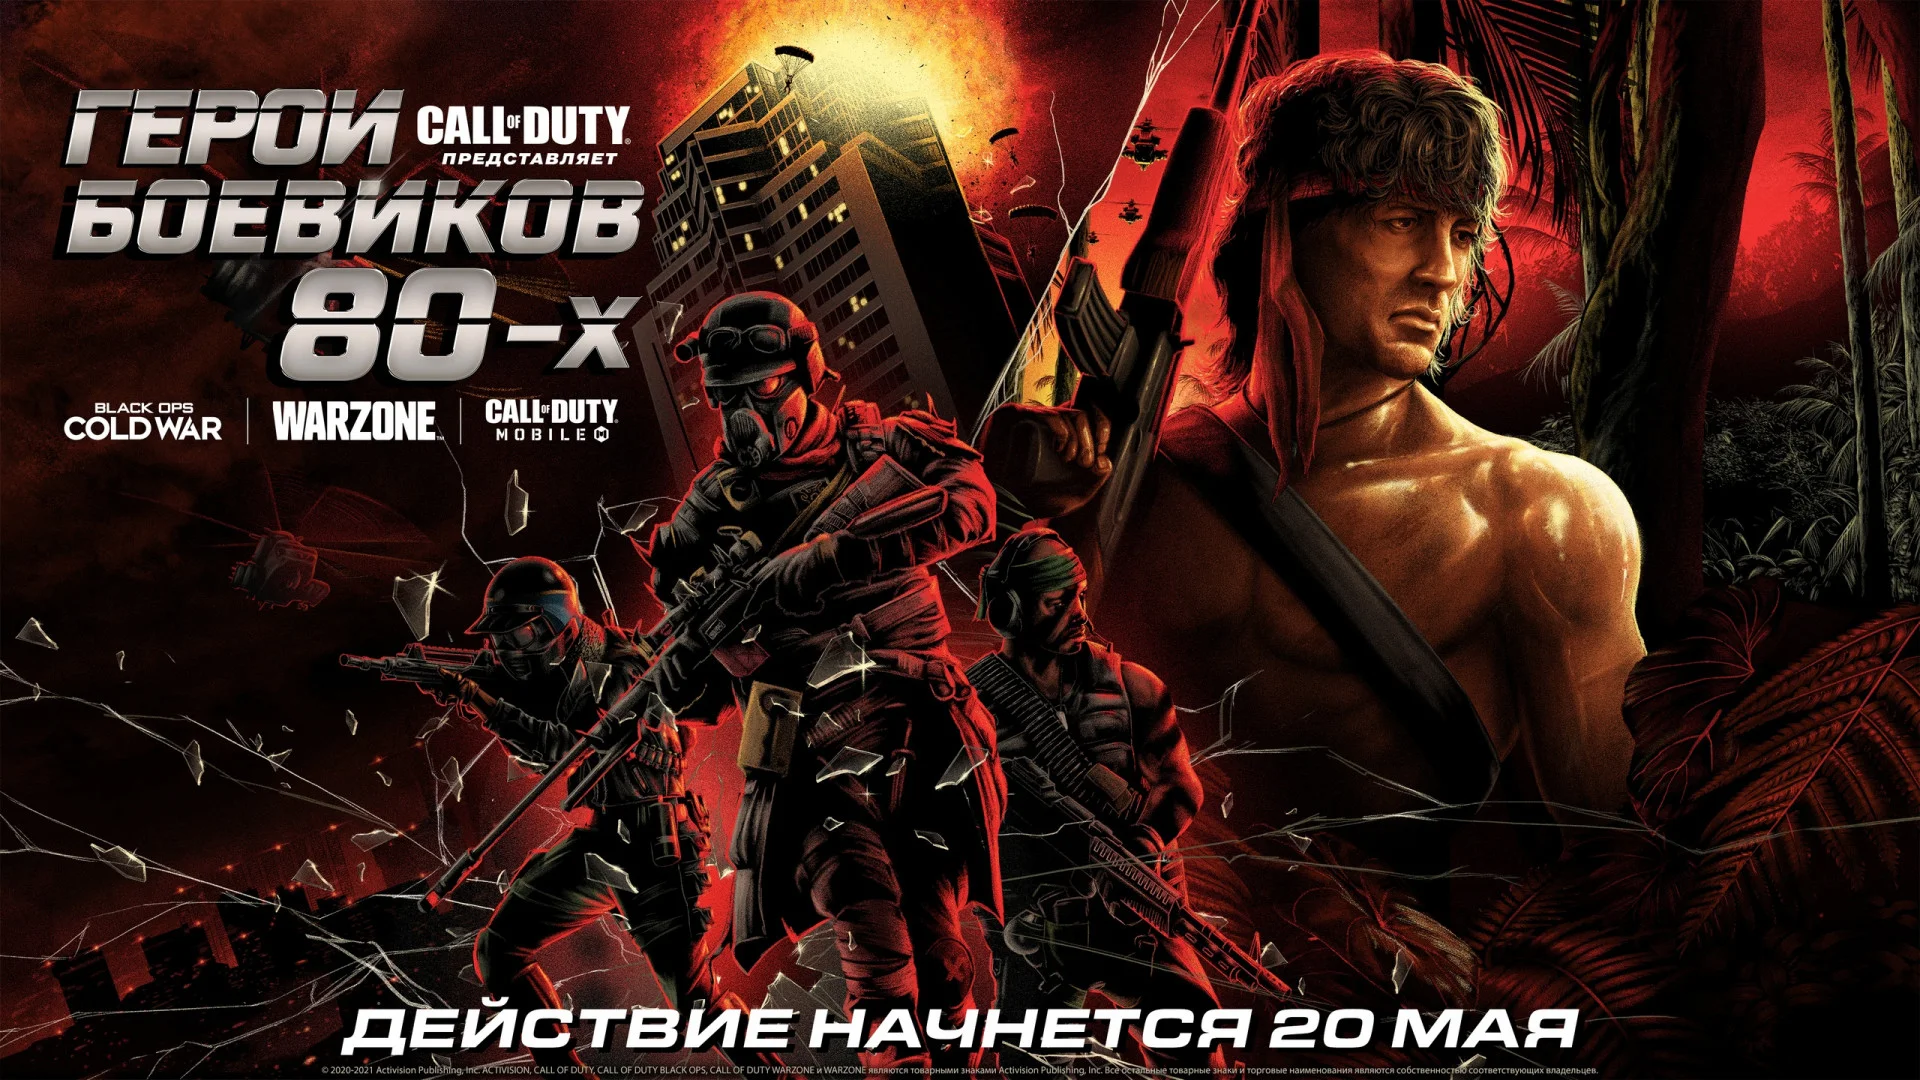 Авторы Call of Duty представили «Героев боевиков 80-х» в Warzone и Black Ops Cold War - фото 1